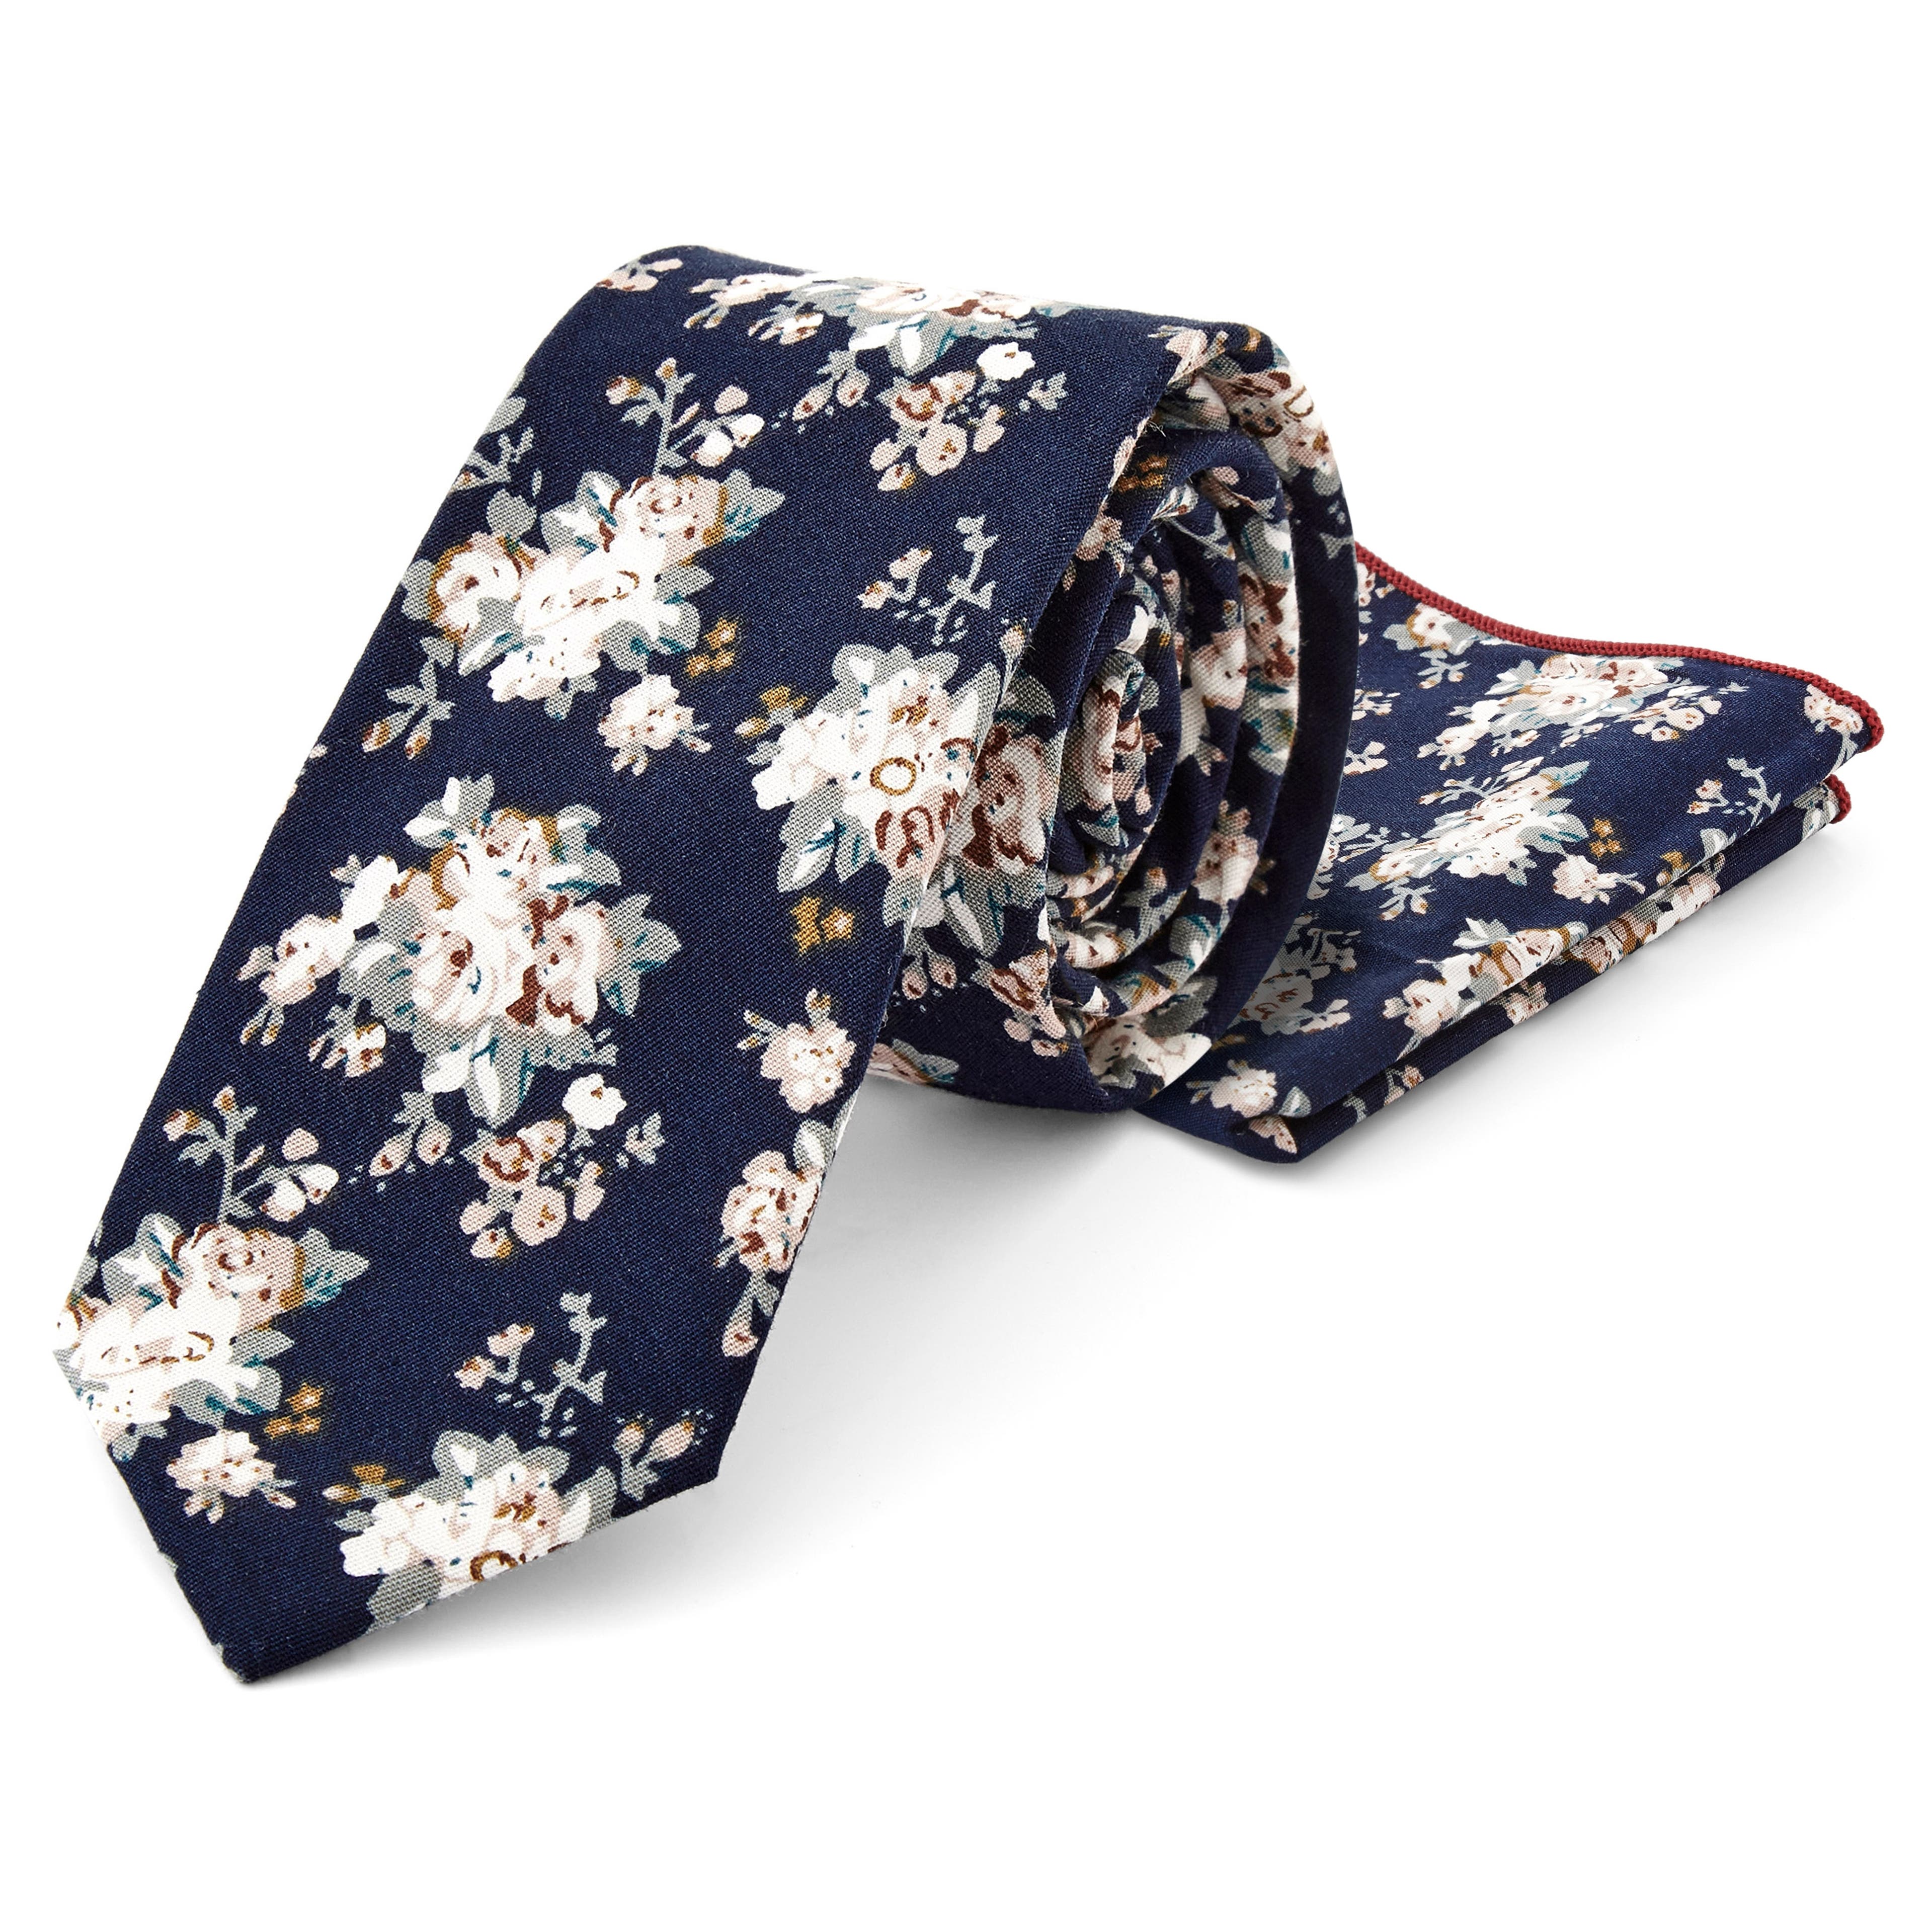 Tengerészkék és fehér virágmintás pamut nyakkendő és díszzsebkendő szett